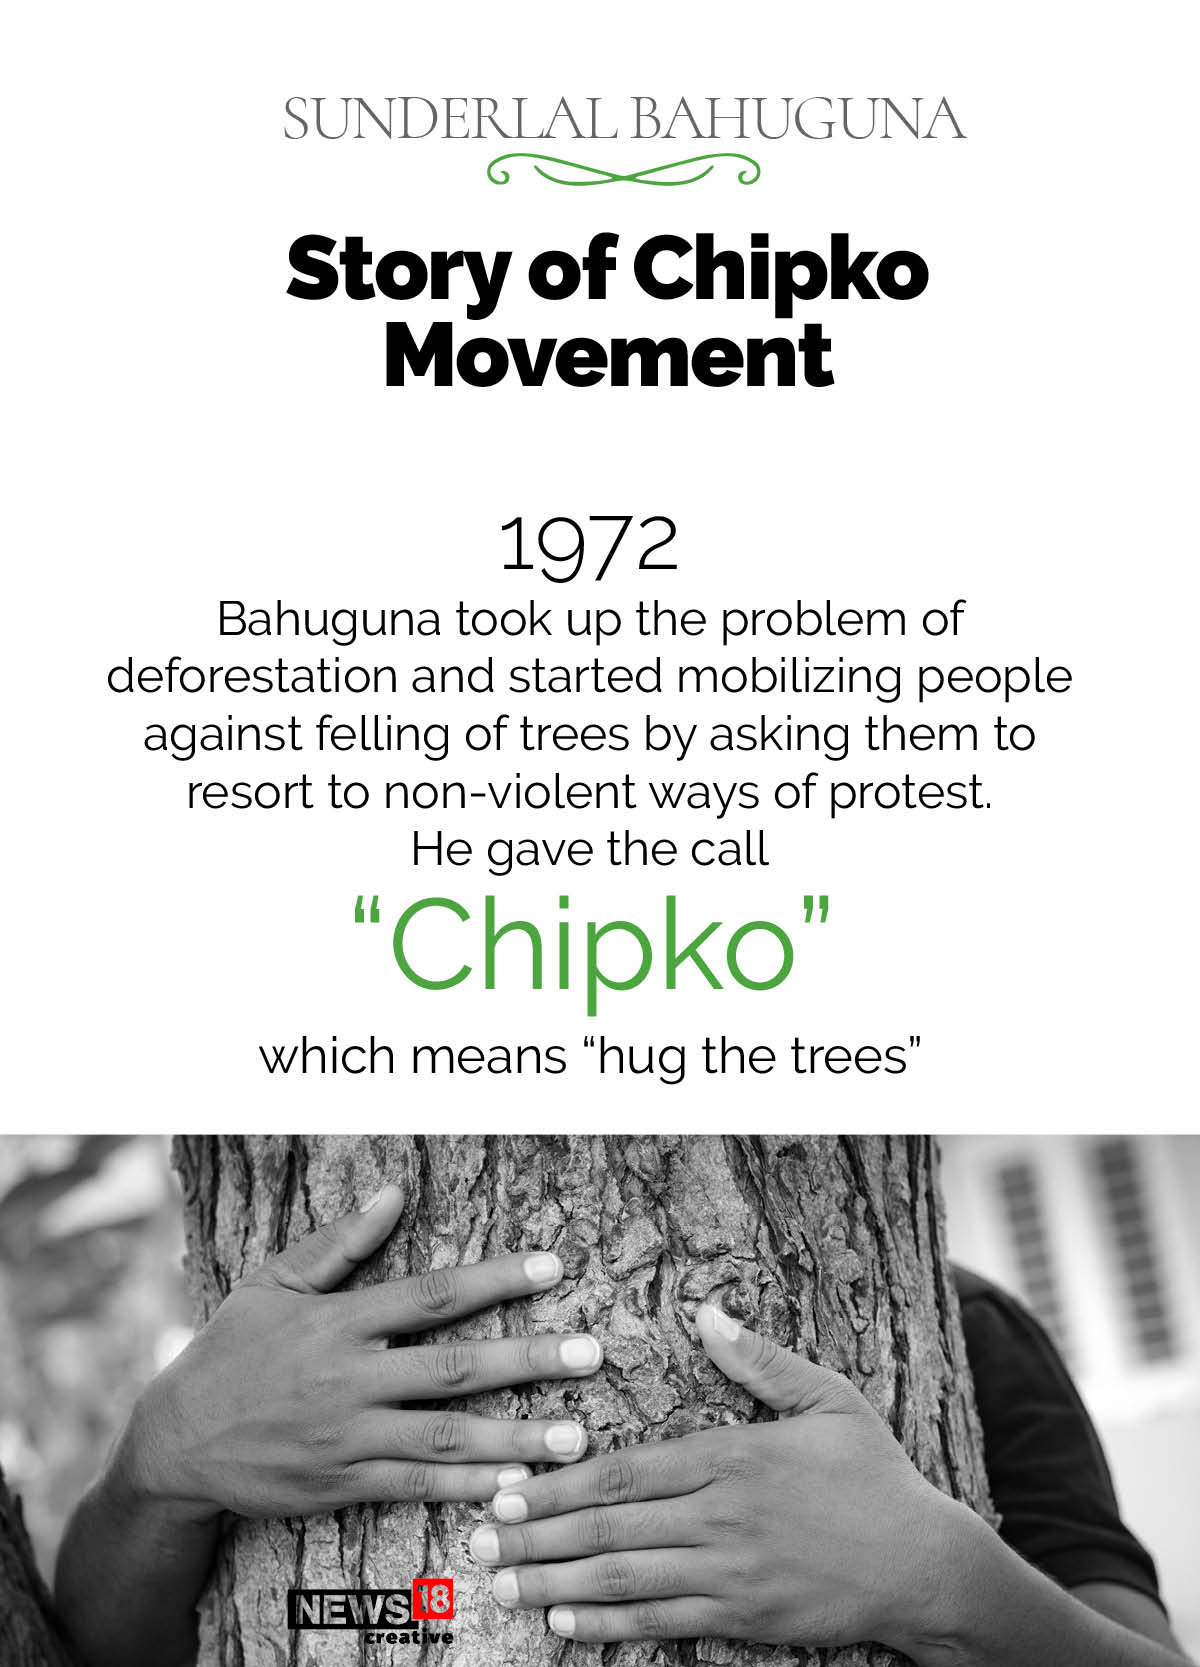 Sunderlal Bahuguna and the story of Chipko movement